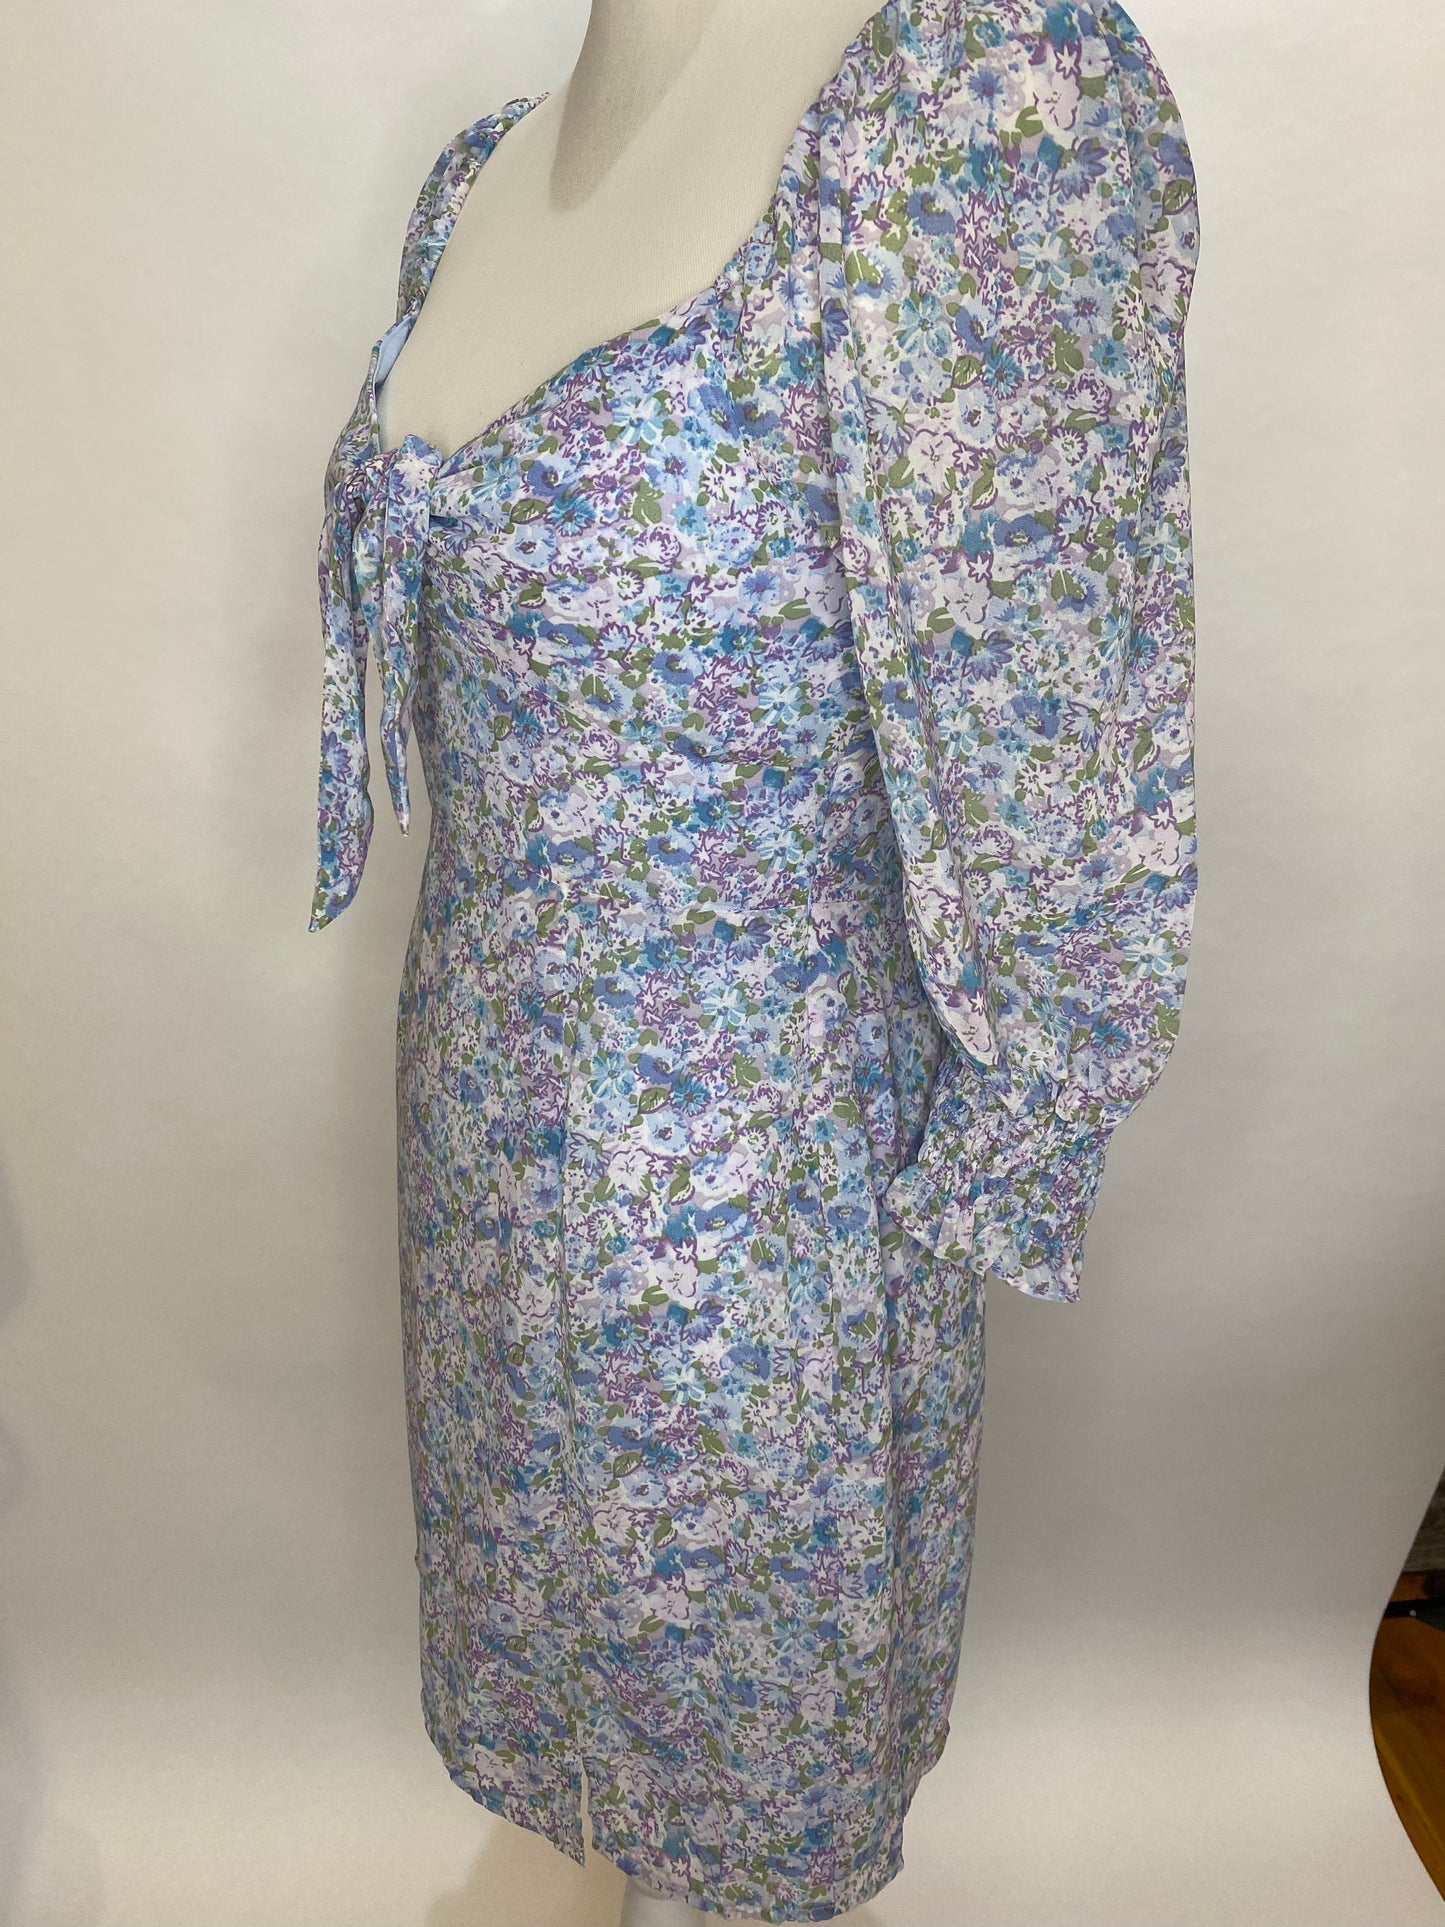 The Peyton Floral Dress